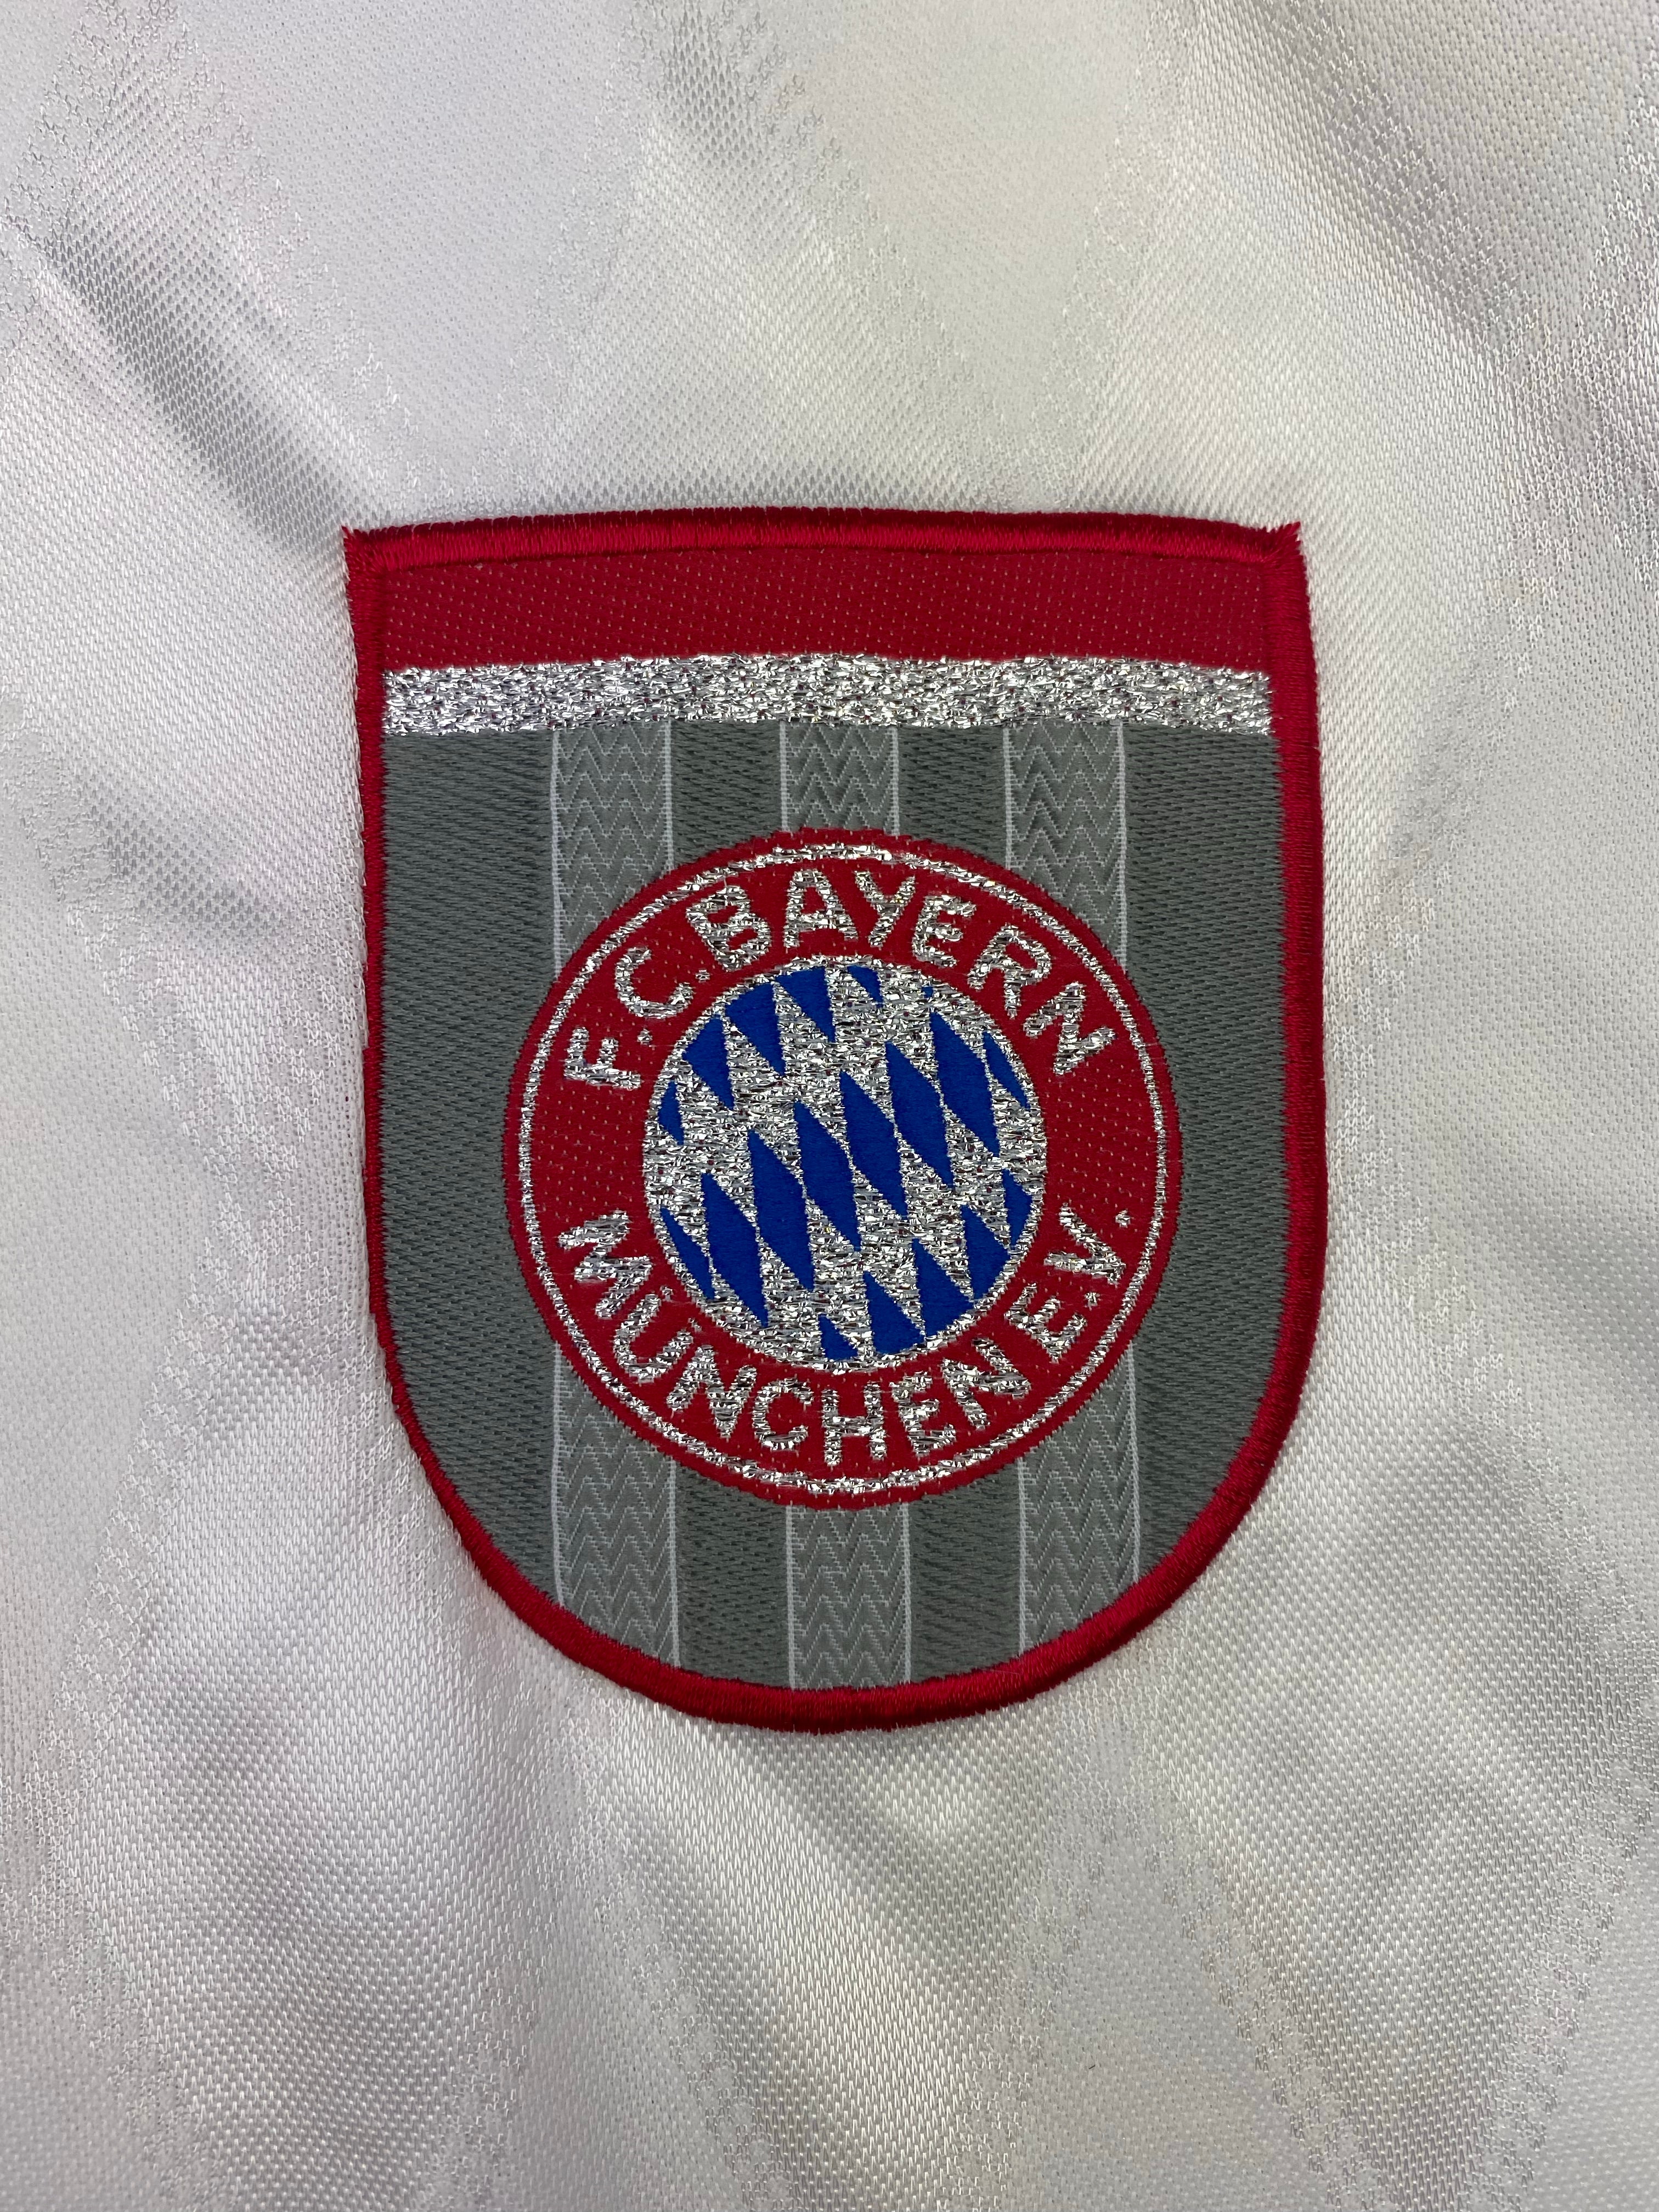 1996/98 Bayern Munich Away Shirt (L) 8.5/10